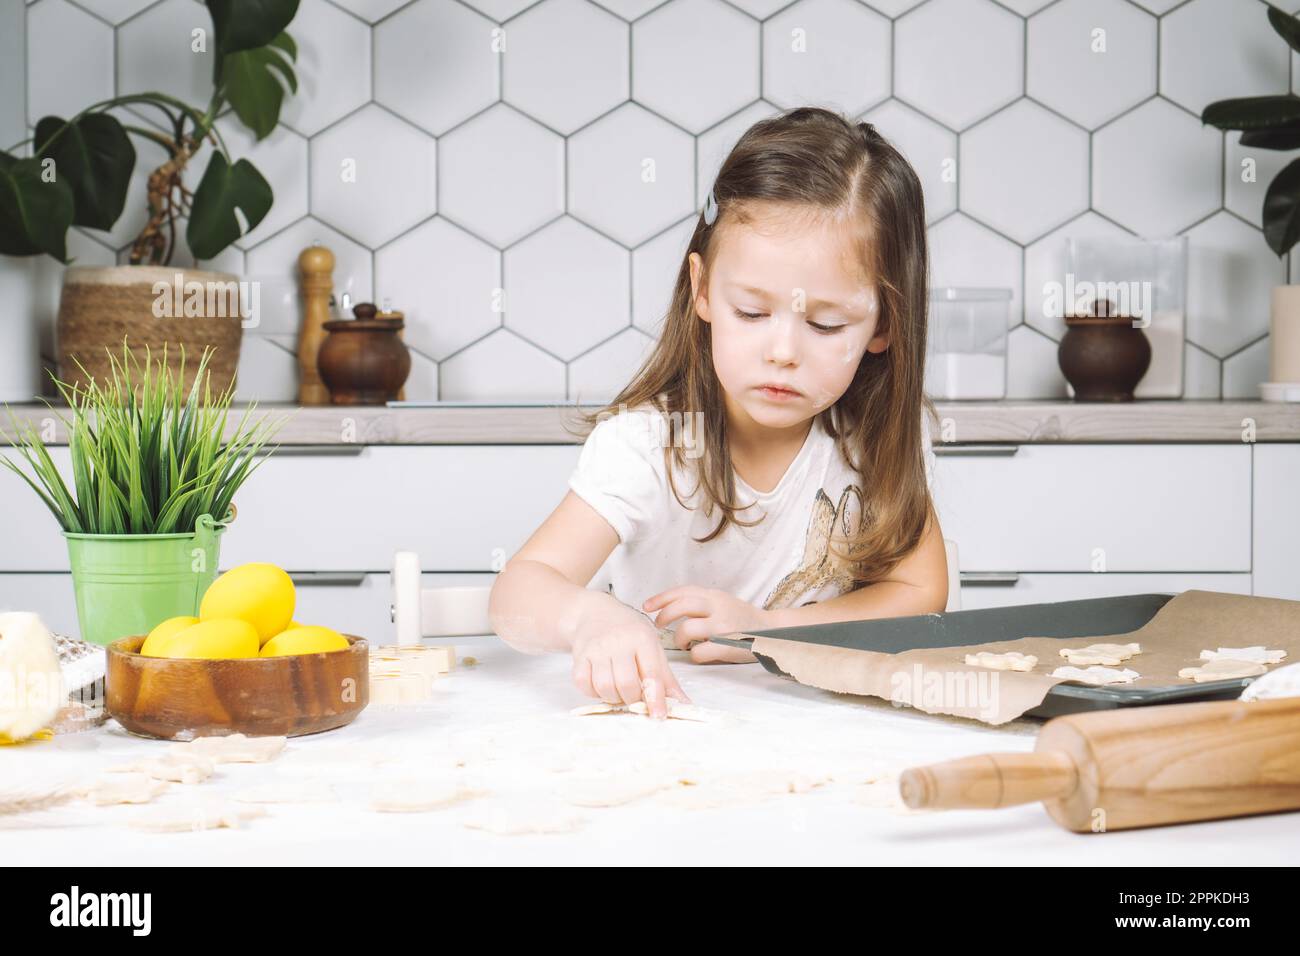 Portrait de petite fille studieusement enfant, chaise assise cuisine, faire différents biscuits de pâte de forme de pâques, poêle à égoutter Banque D'Images